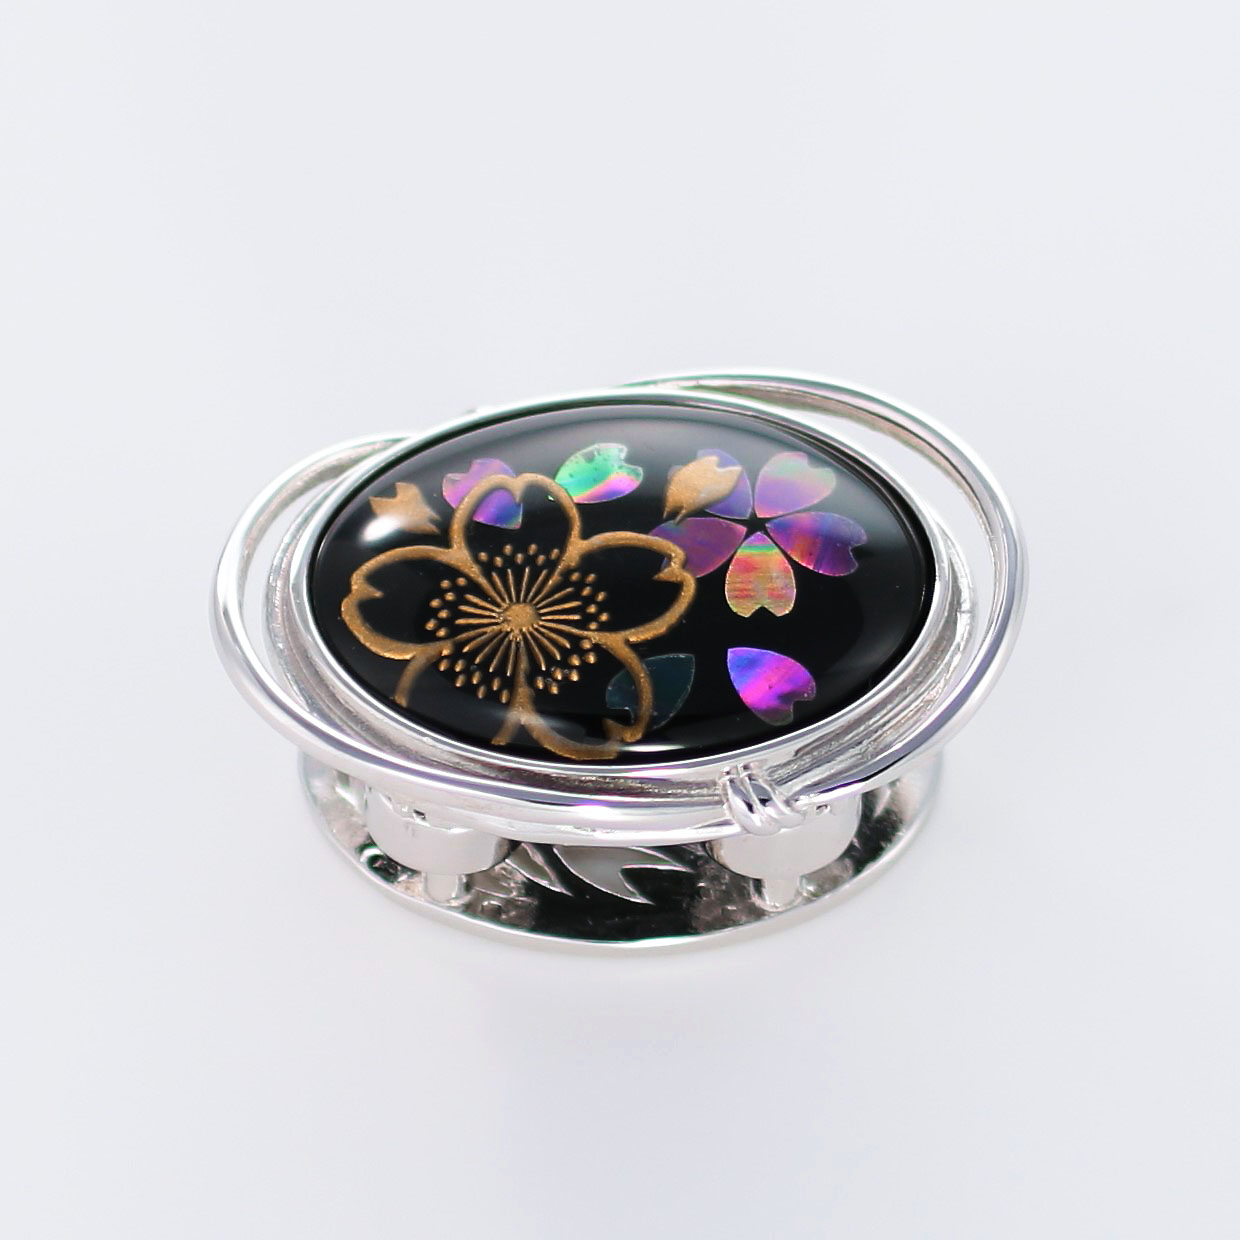 宝石クォーツ・水晶を使った花と和風のデザインが特徴的な和の彩帯留めの商品写真です。型番：CR601002-01~02 画像その1